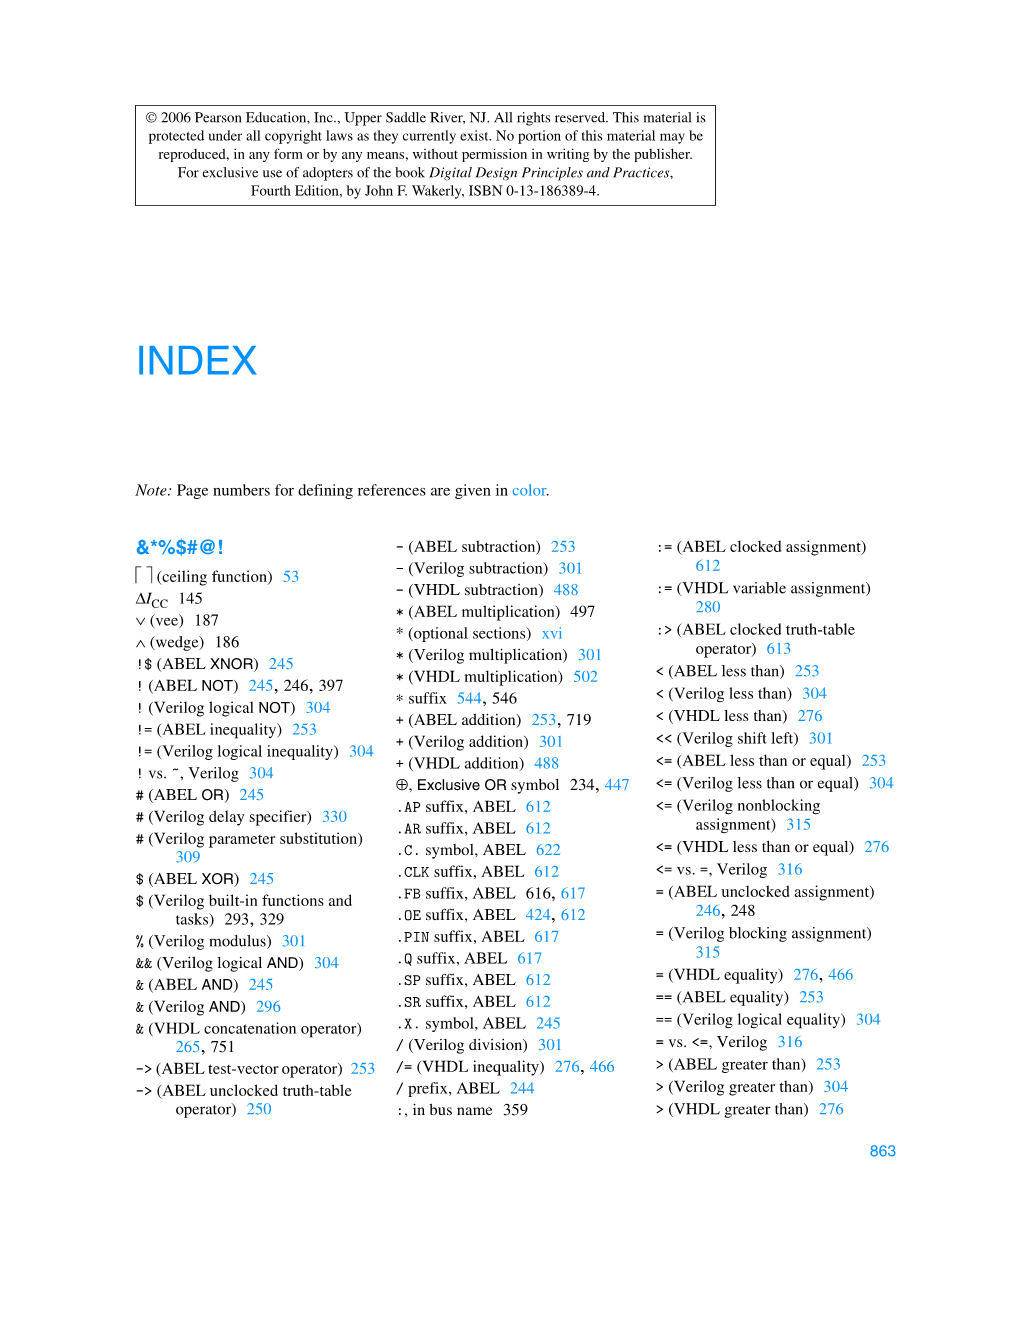 Fourth-Edition Index